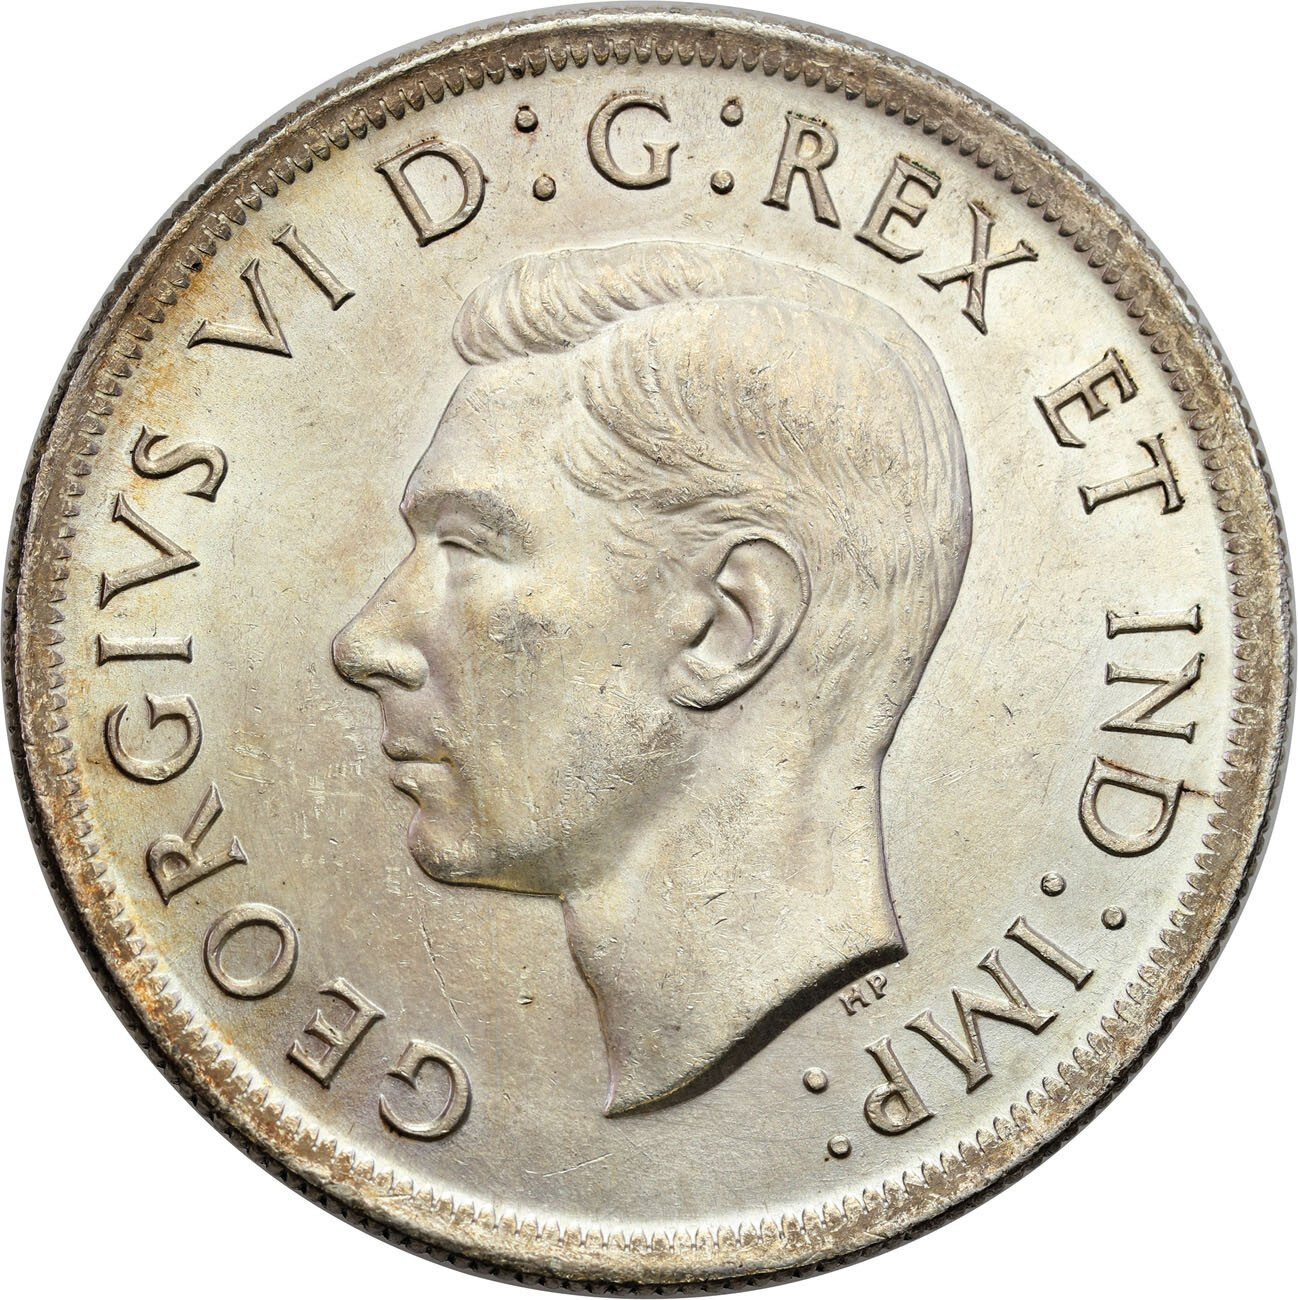 Wielka Brytania/Kanada, Jerzy VI (1936–1952), 1 dolar 1939, Ottawa – PIĘKNY